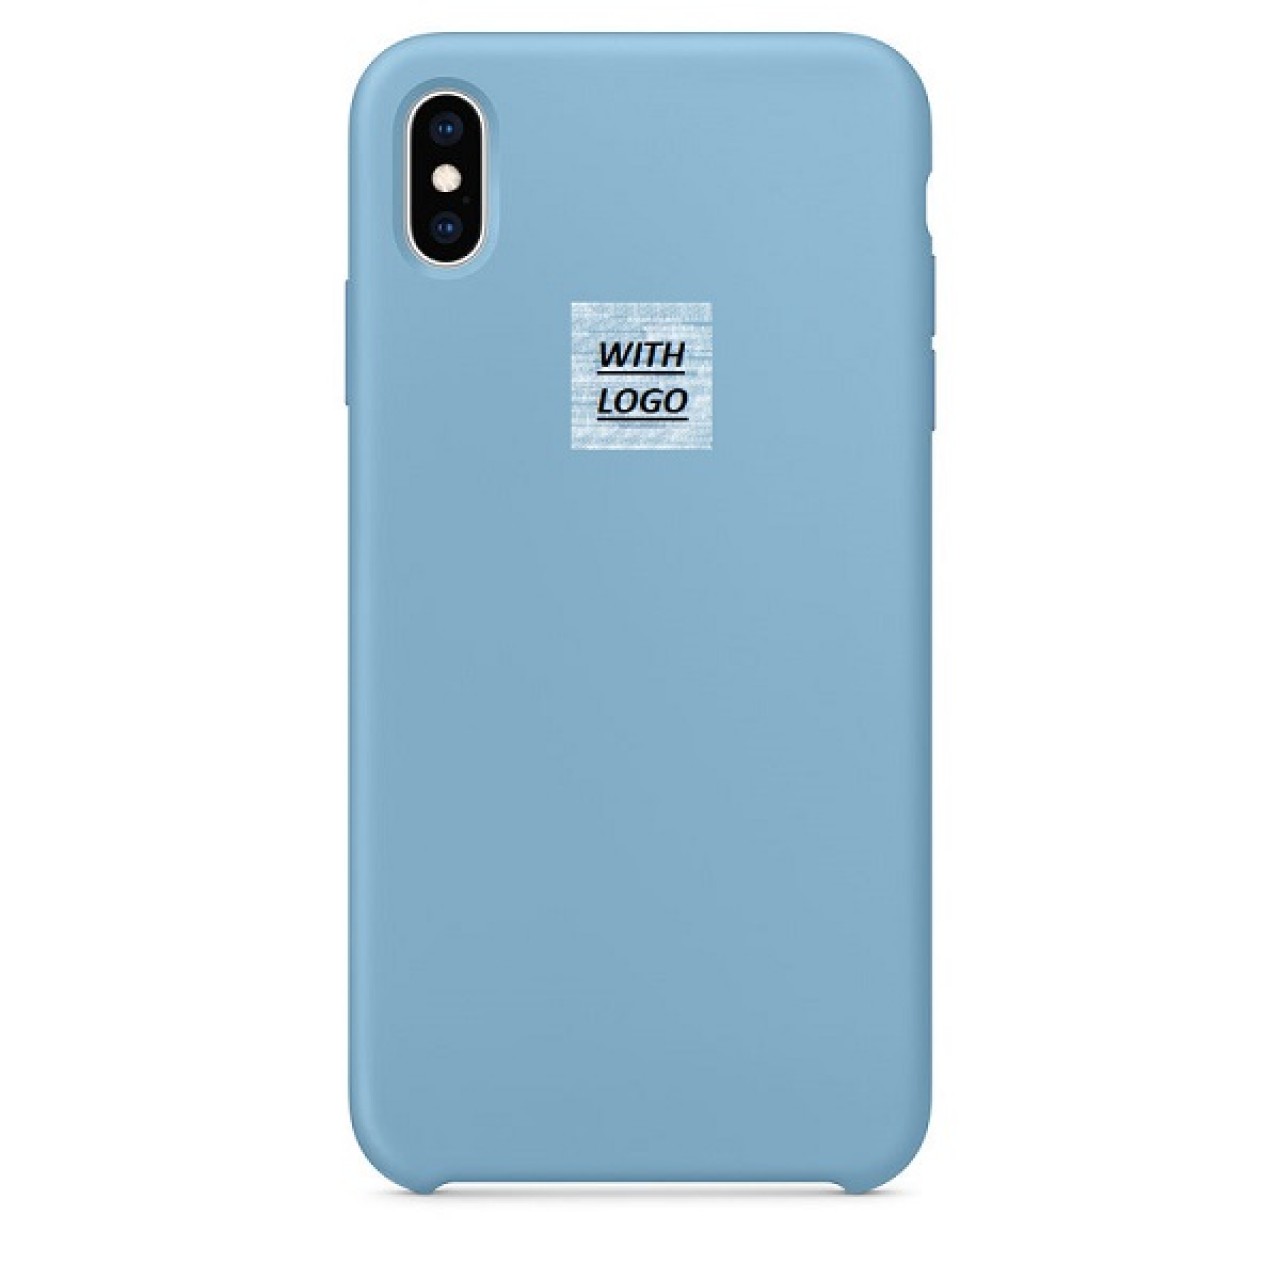 Θήκη Προστασίας Σιλικόνης iPhone XR - Back Cover Silicone Case - Pastel Blue